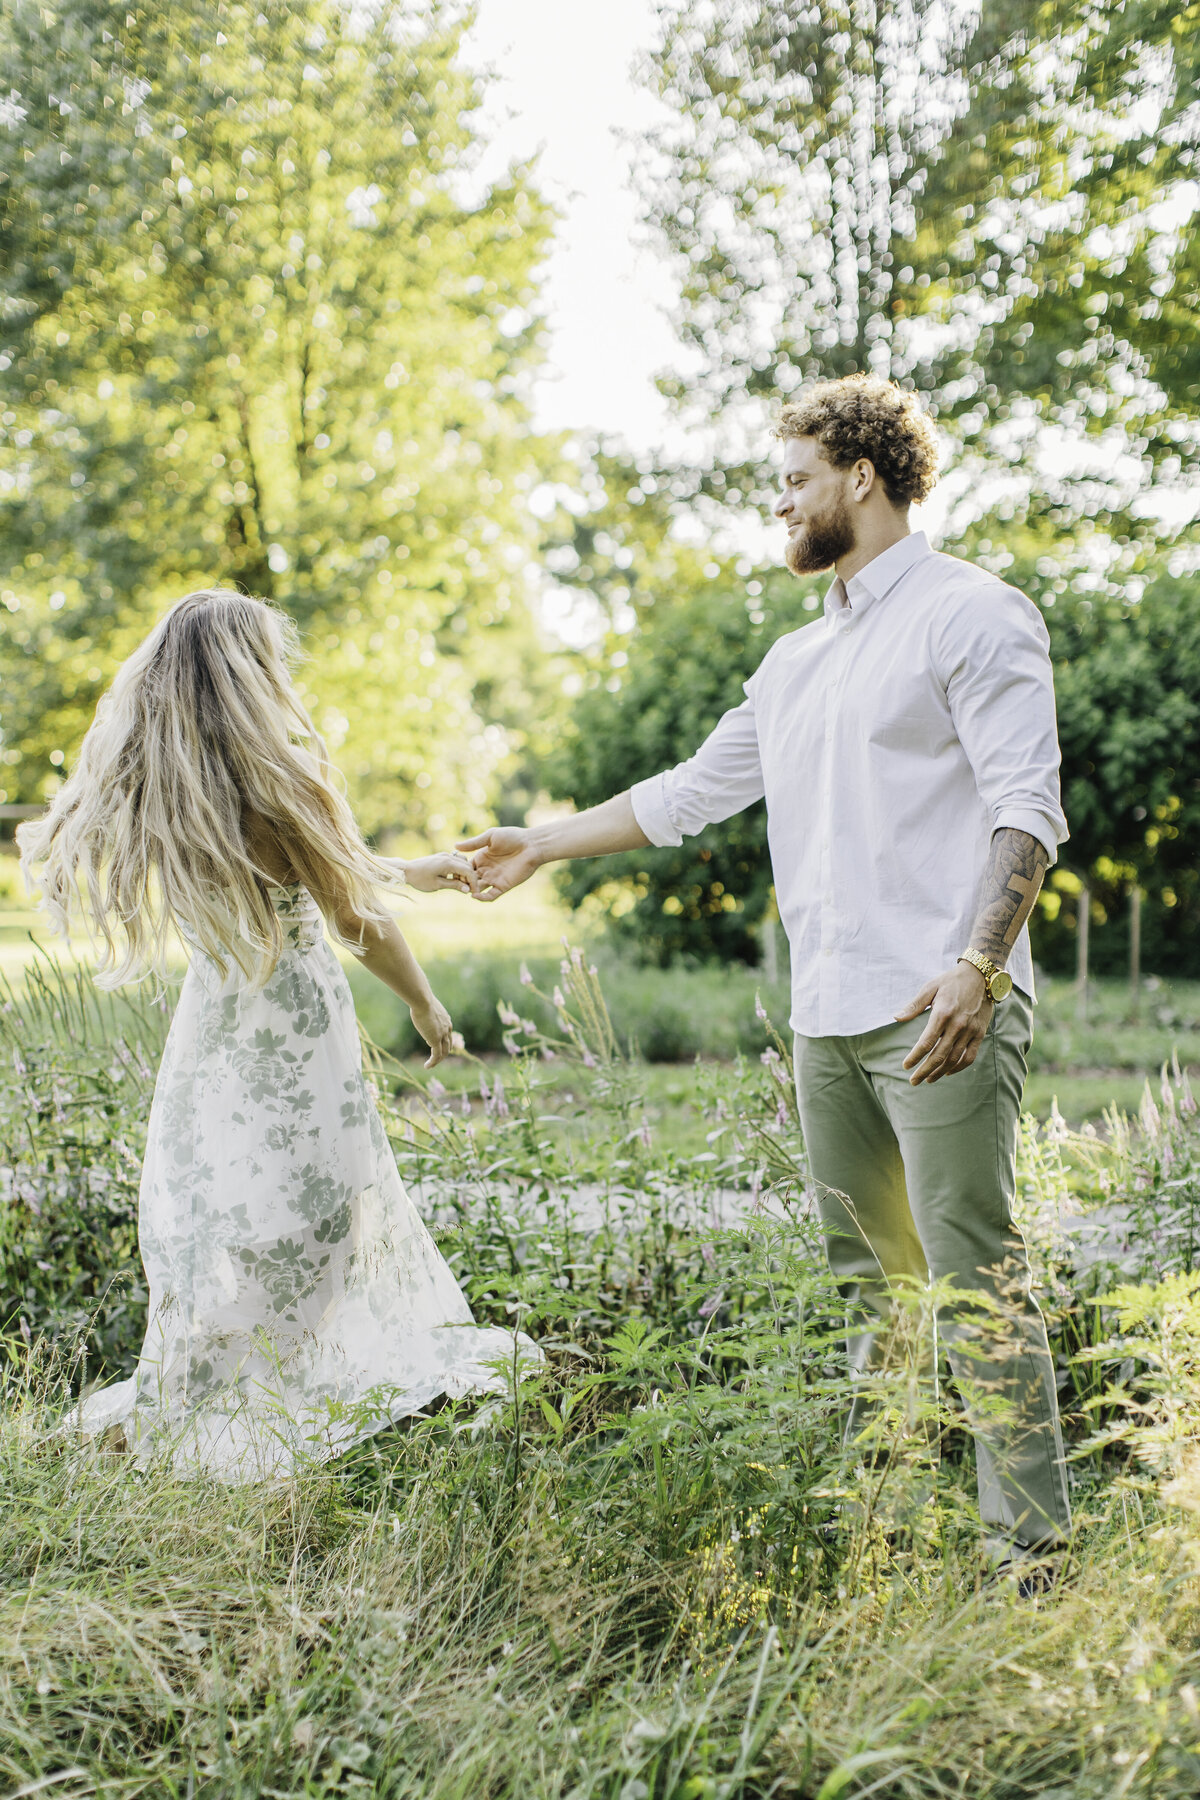 boyfriend dancing with his girlfriend in a garden